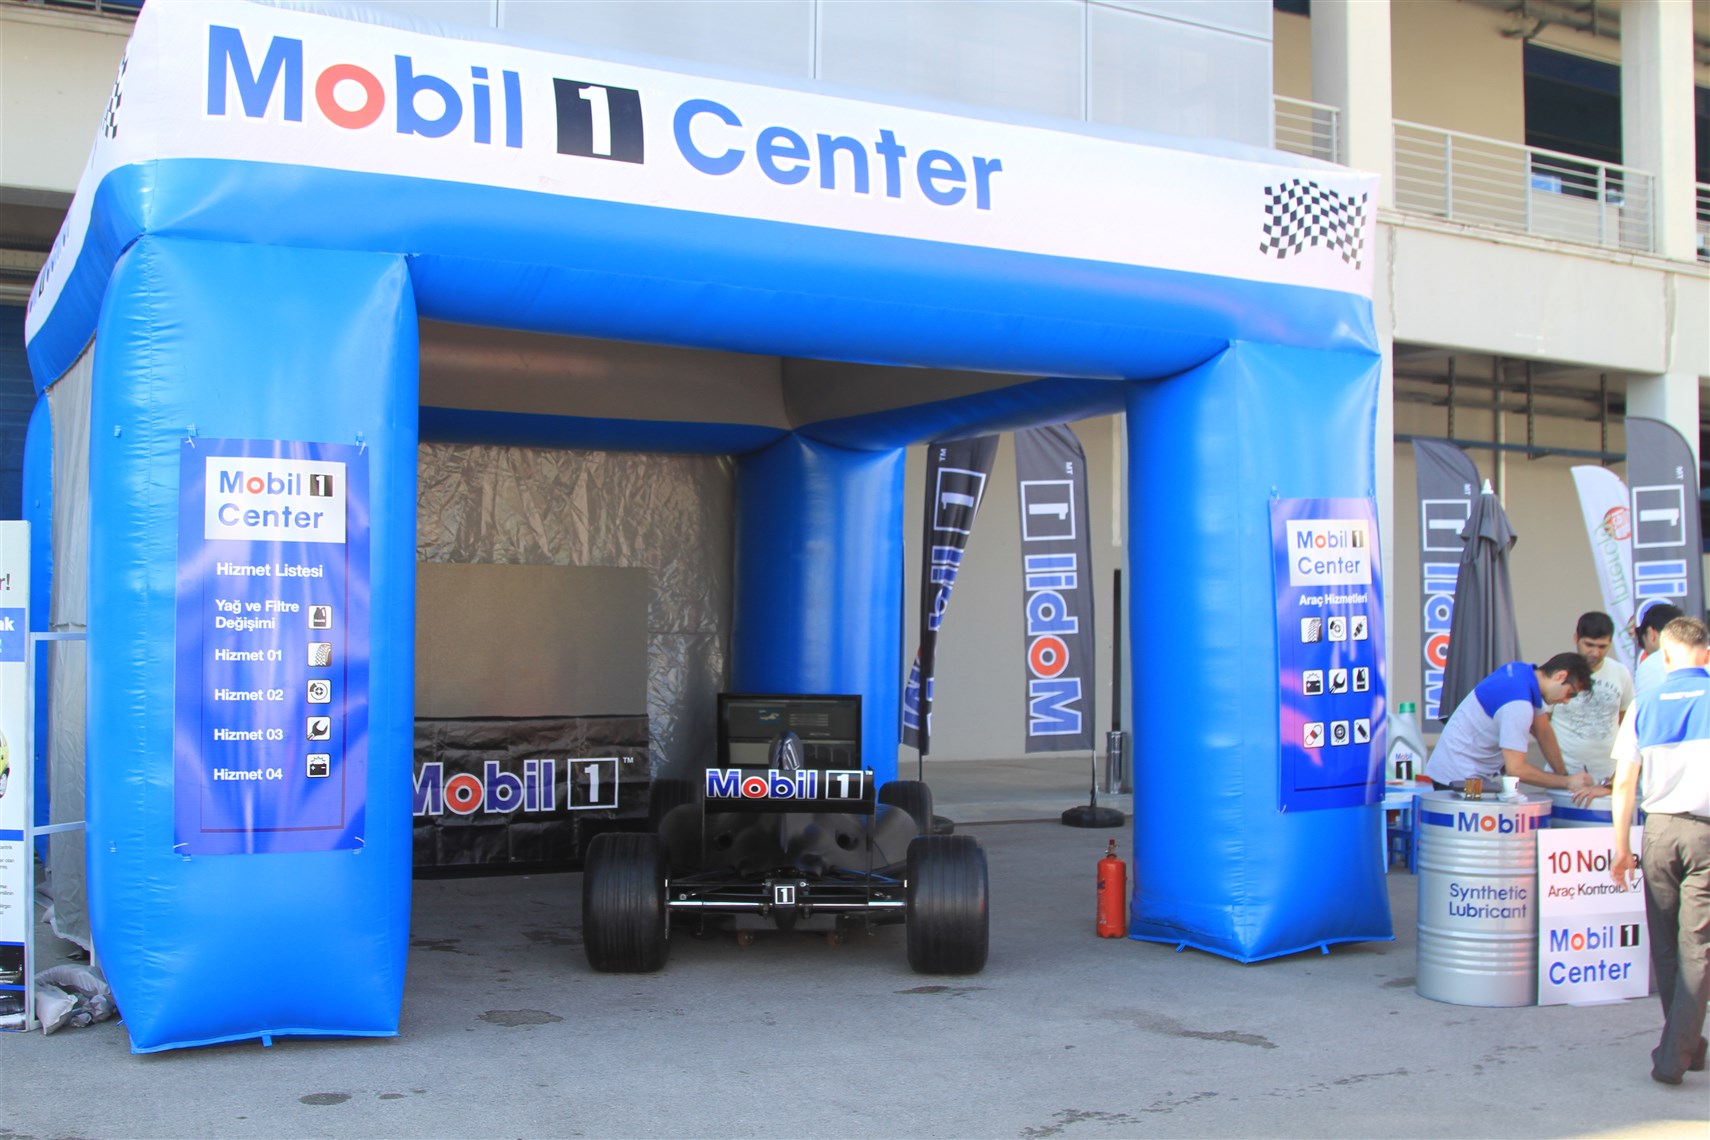 Mobil 1 Center